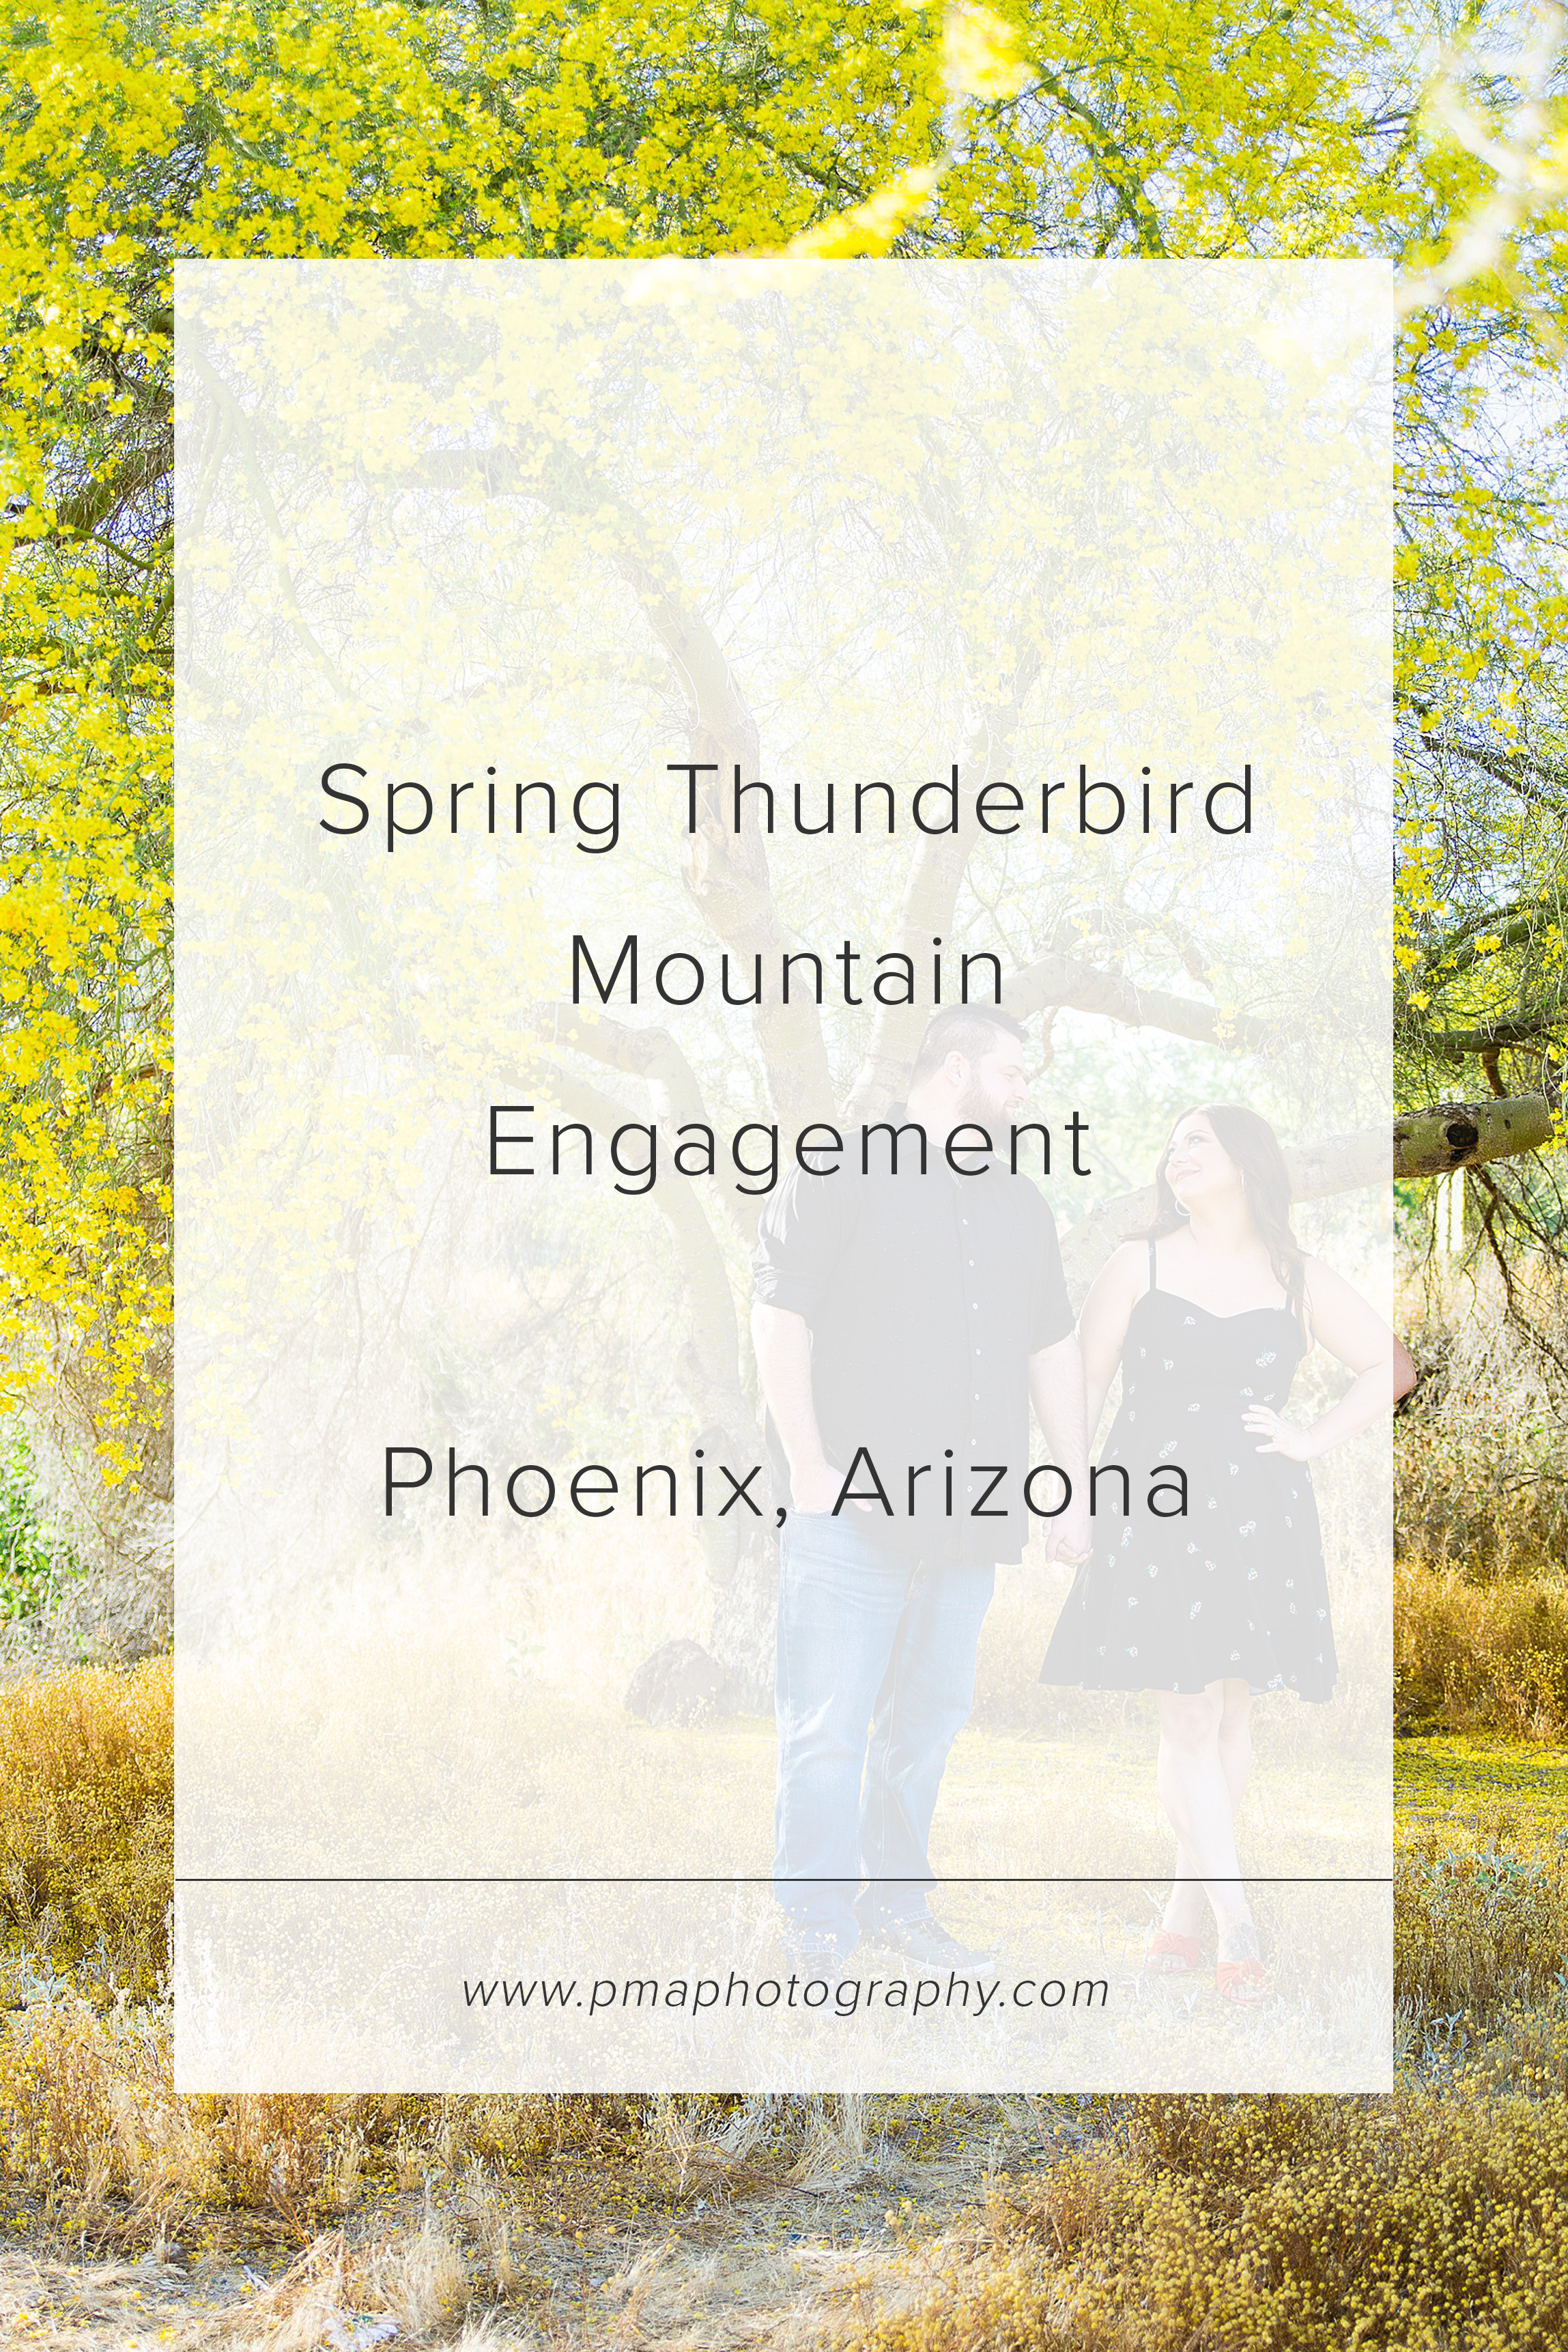 Thunderbird Mountain engagement session by Phoenix engagement photographer PMA Photography.